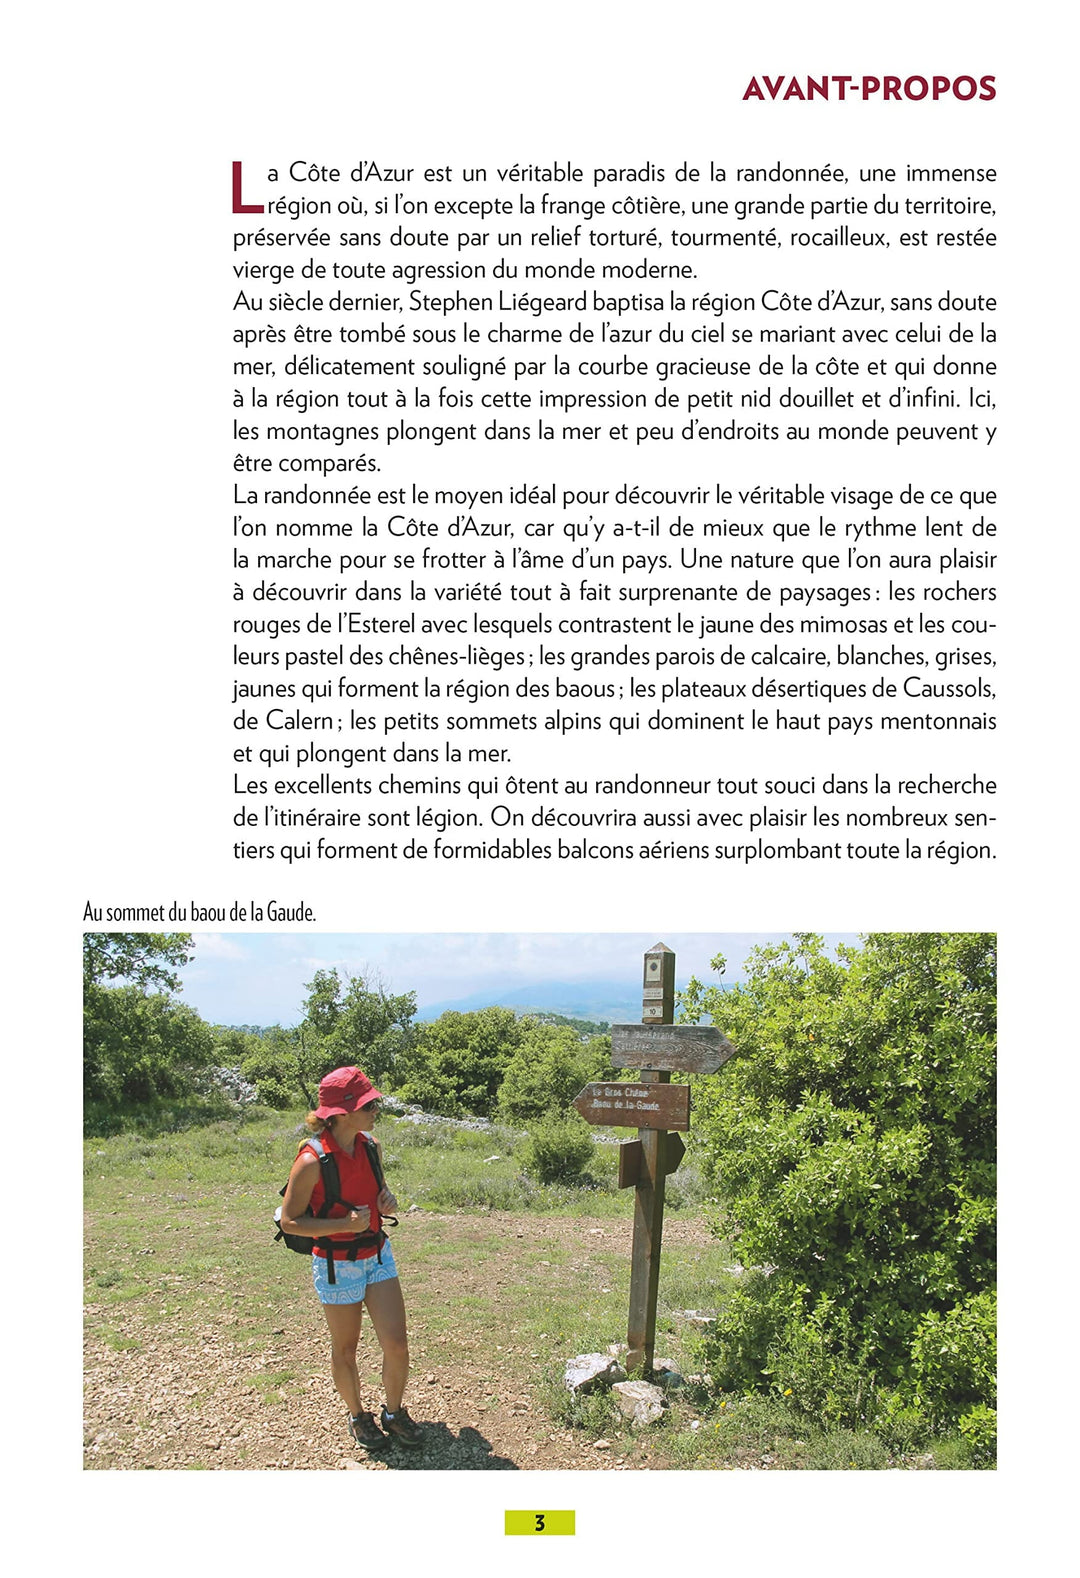 Guide de balades - Alpes-Maritimes - Balades en famille | Glénat - P'tit Crapahut guide petit format Glénat 